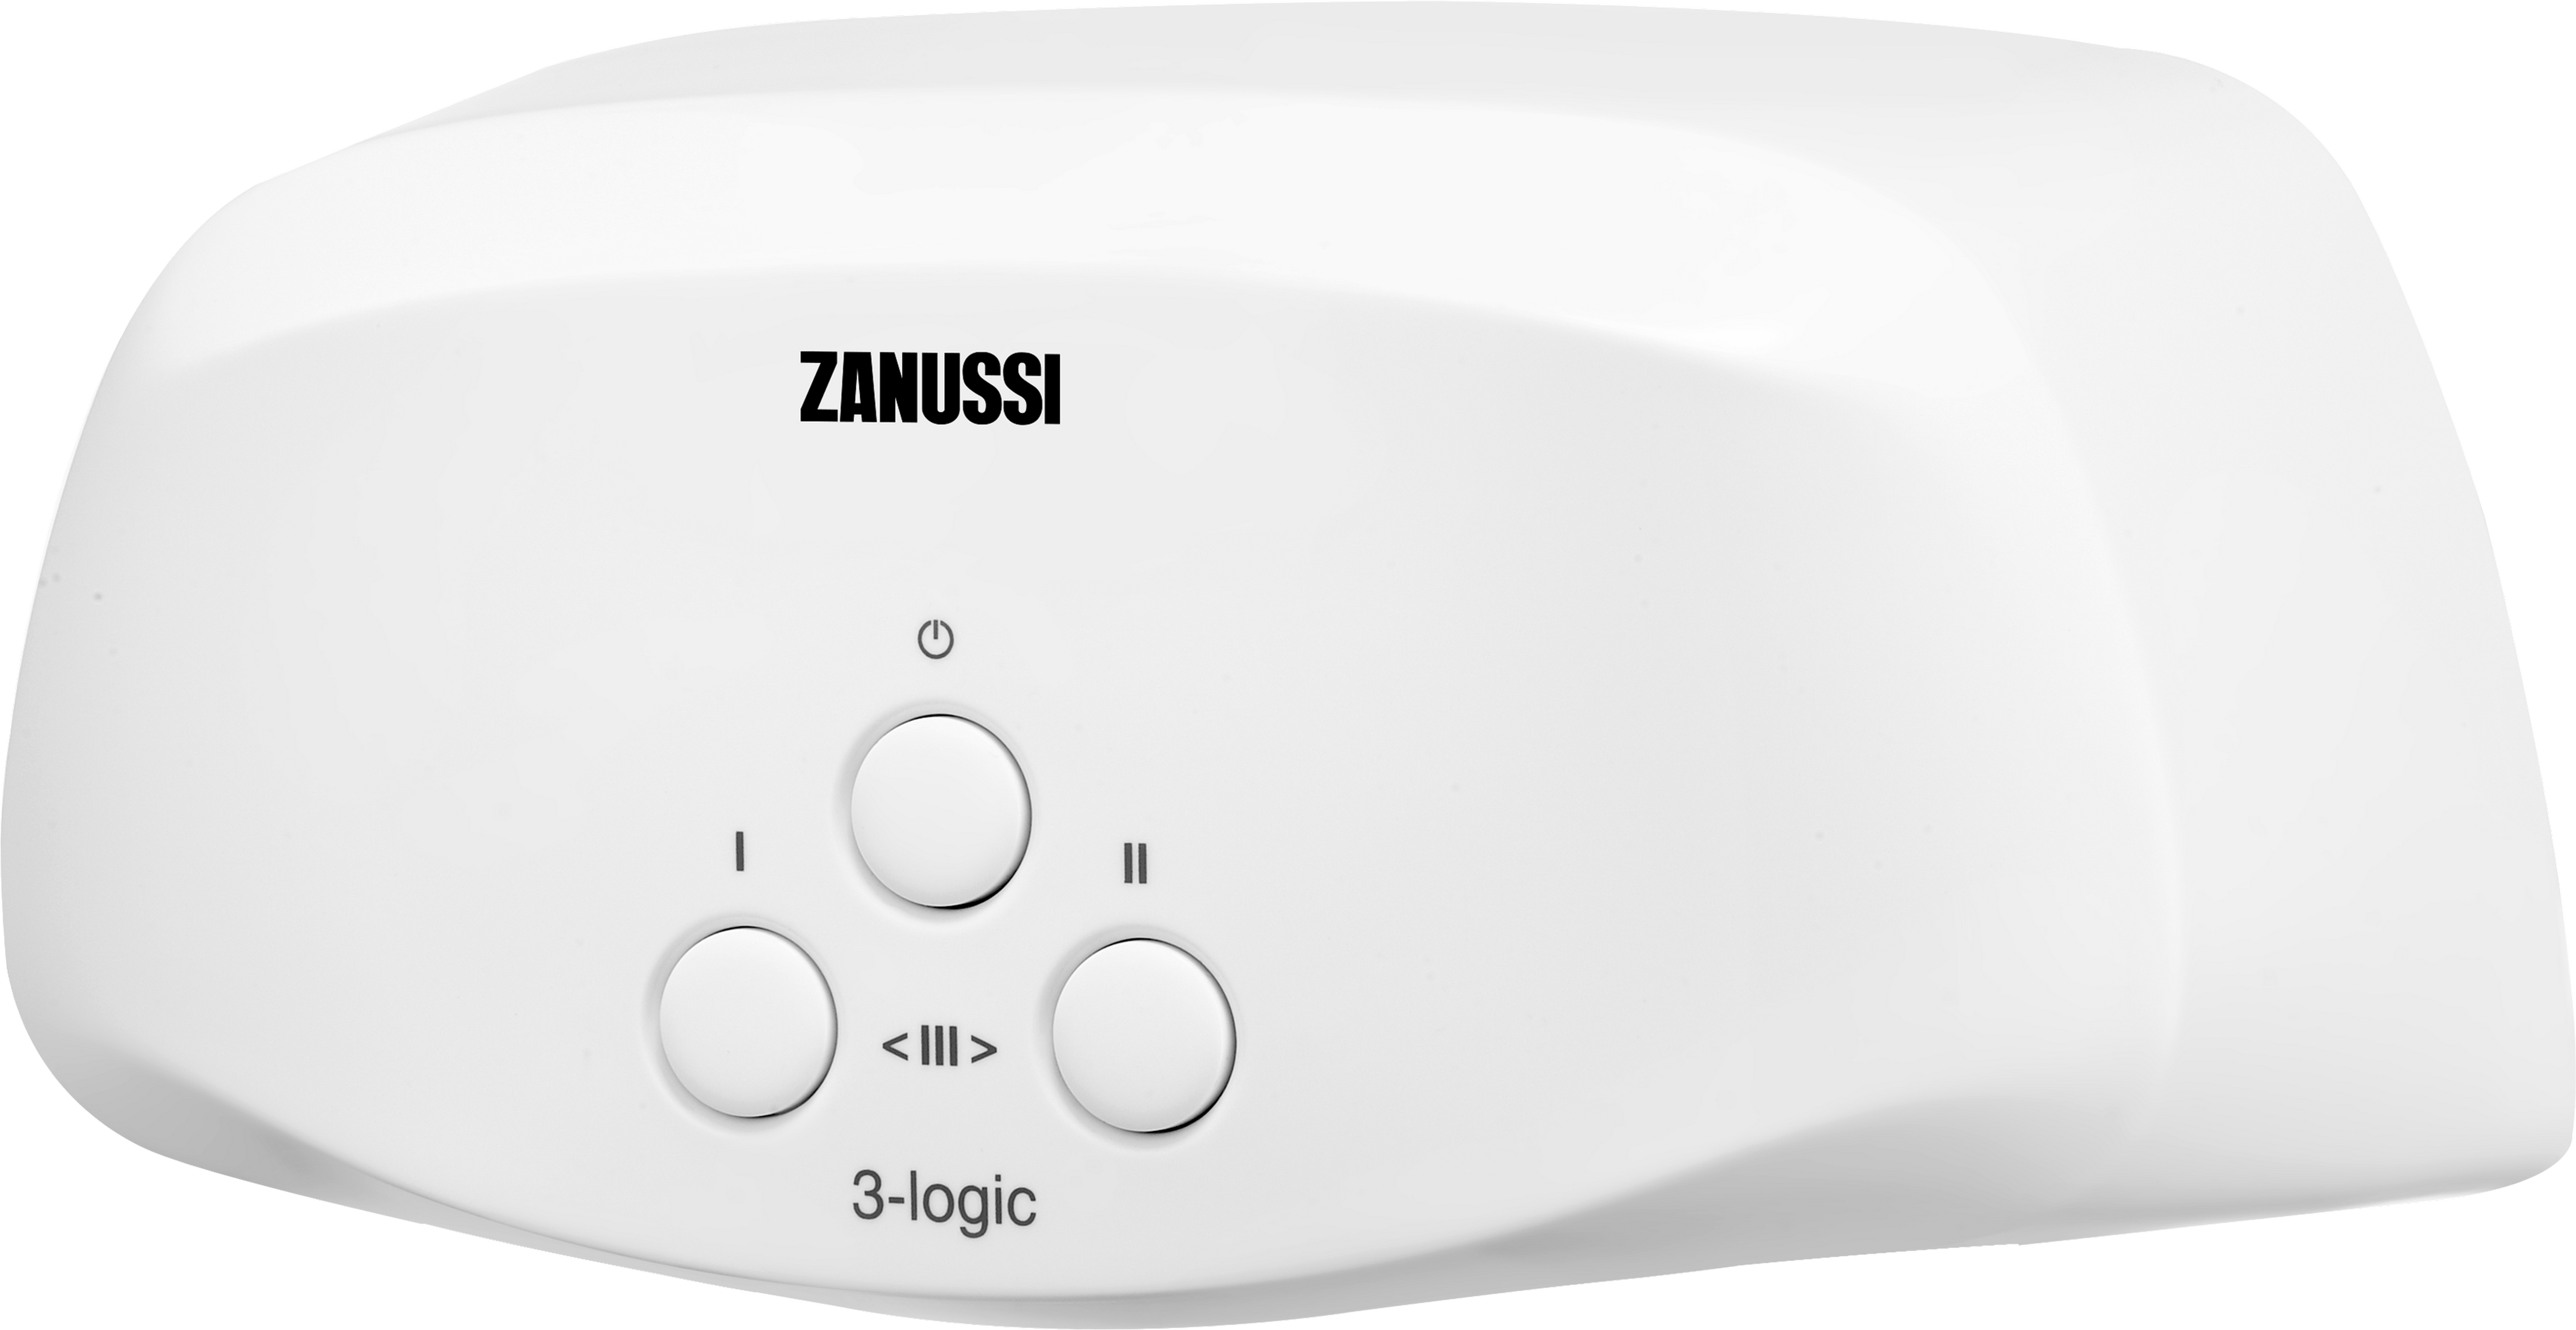 Проточный водонагреватель Zanussi 3-logic T (3,5 кВт) цена 0.00 грн - фотография 2